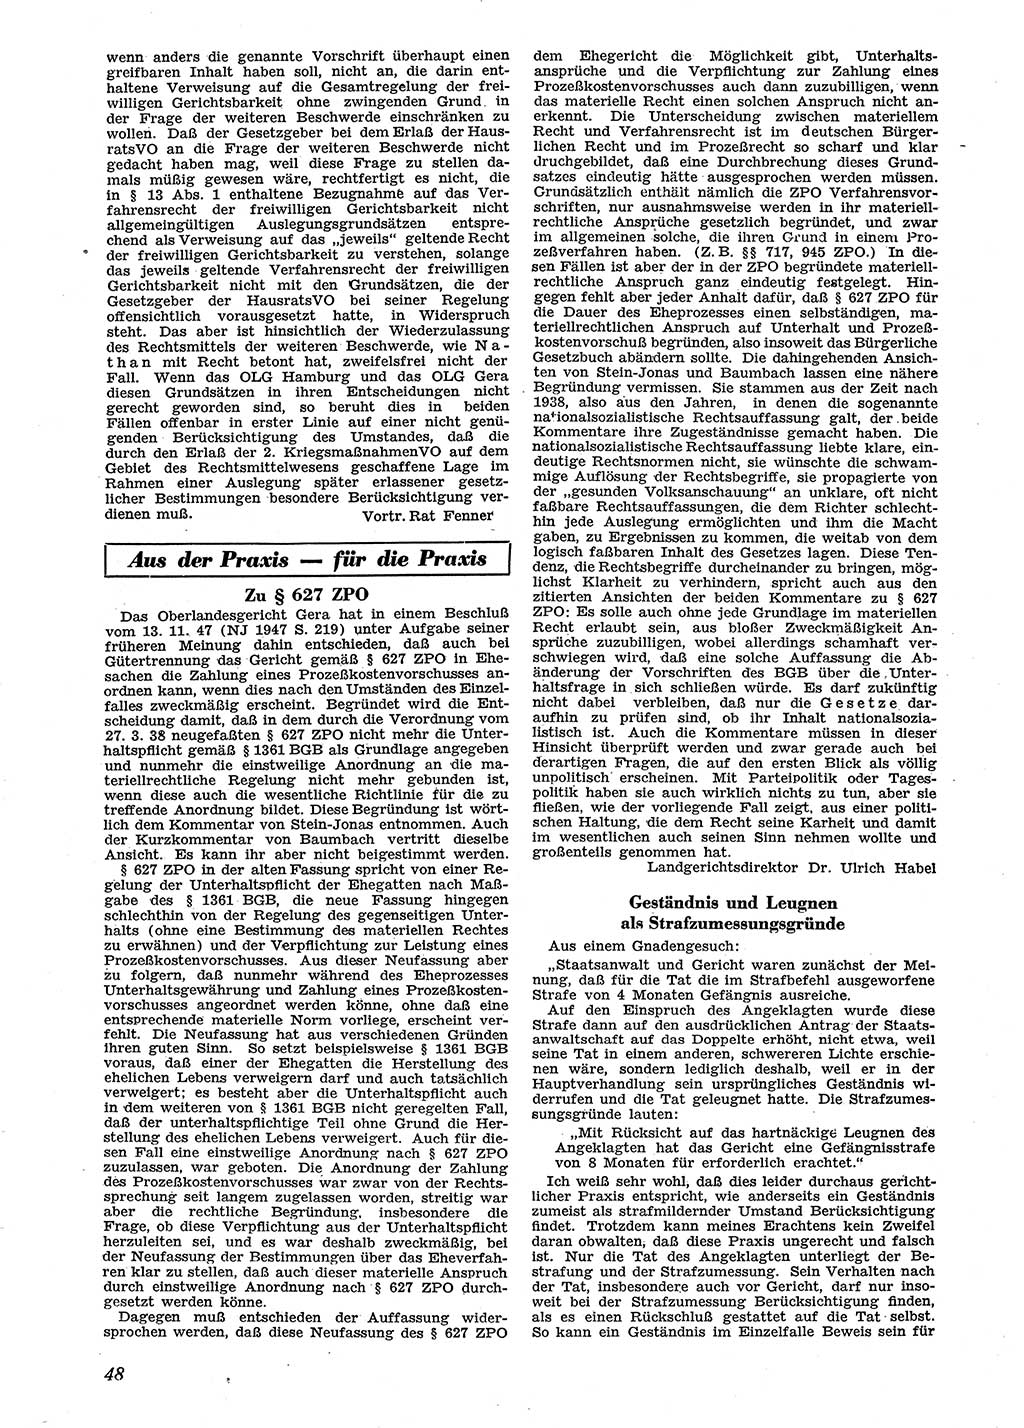 Neue Justiz (NJ), Zeitschrift für Recht und Rechtswissenschaft [Sowjetische Besatzungszone (SBZ) Deutschland], 2. Jahrgang 1948, Seite 48 (NJ SBZ Dtl. 1948, S. 48)